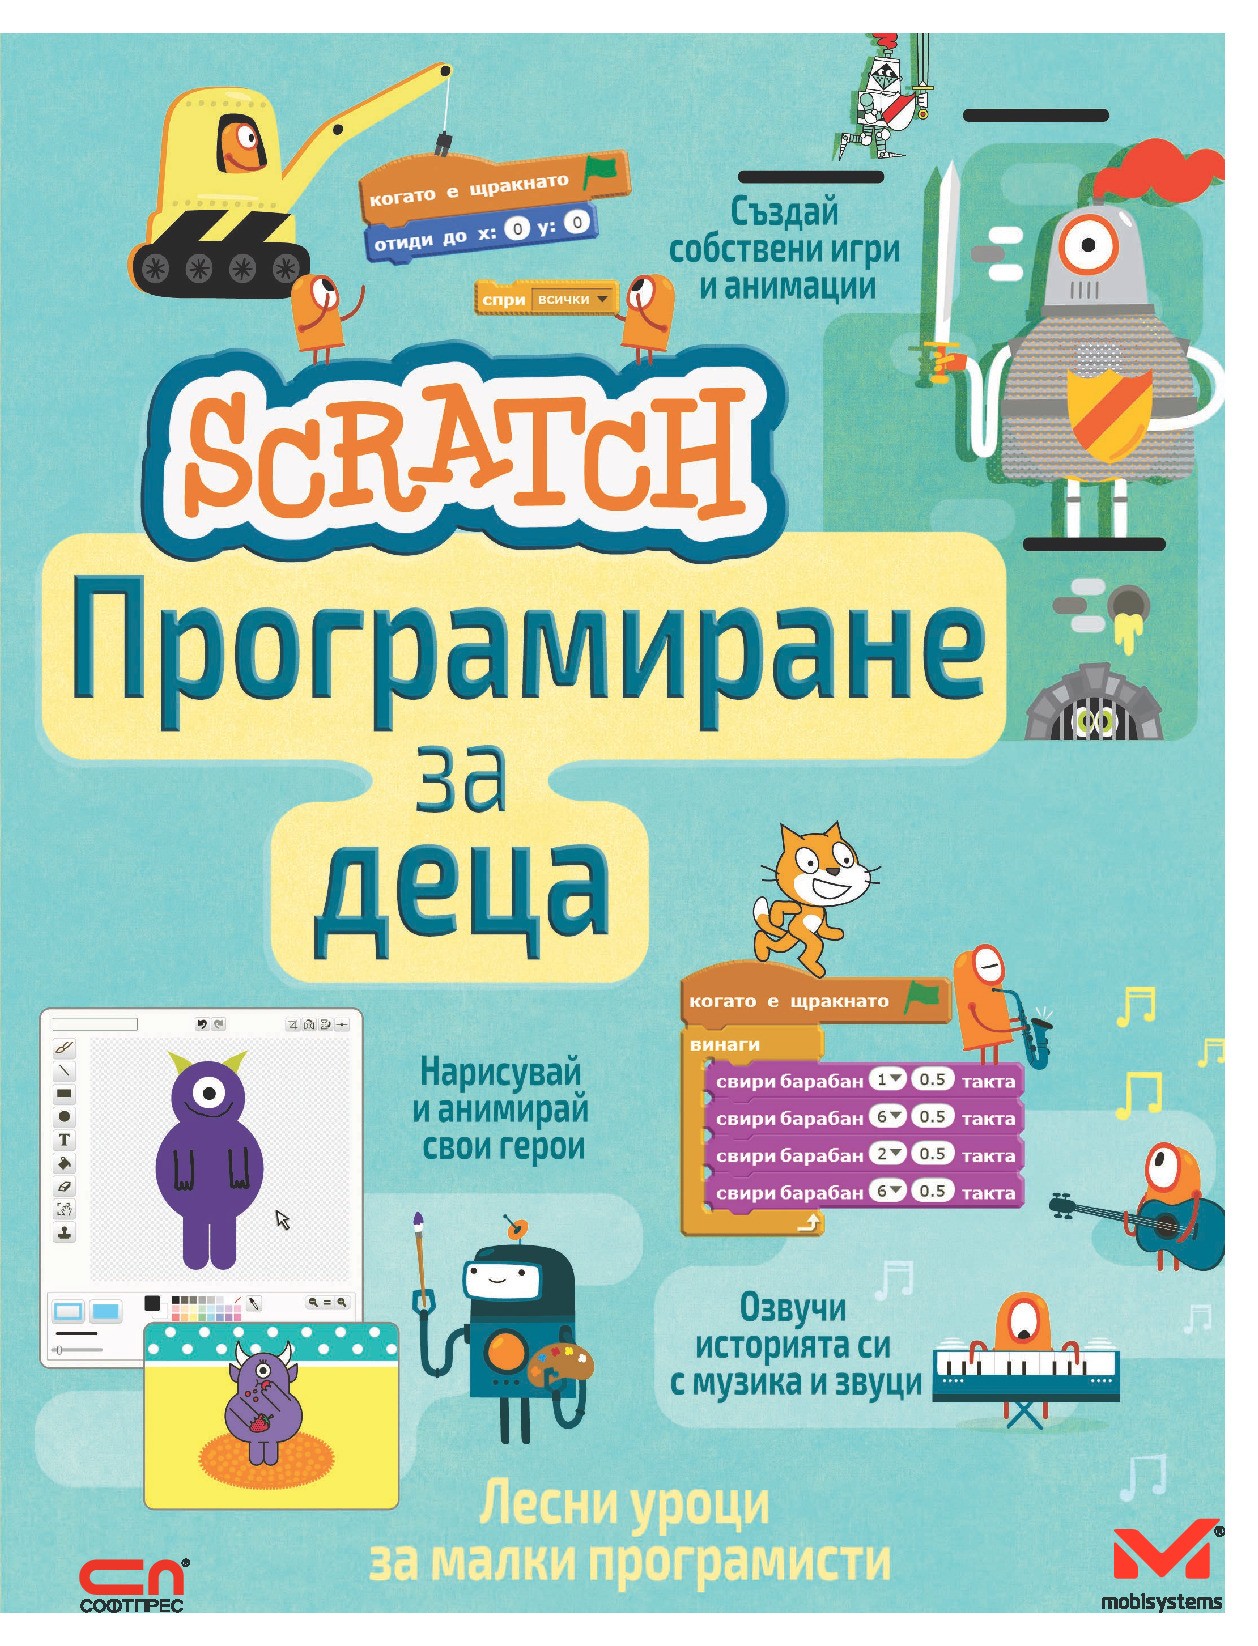 scratch programirane za detsa 1